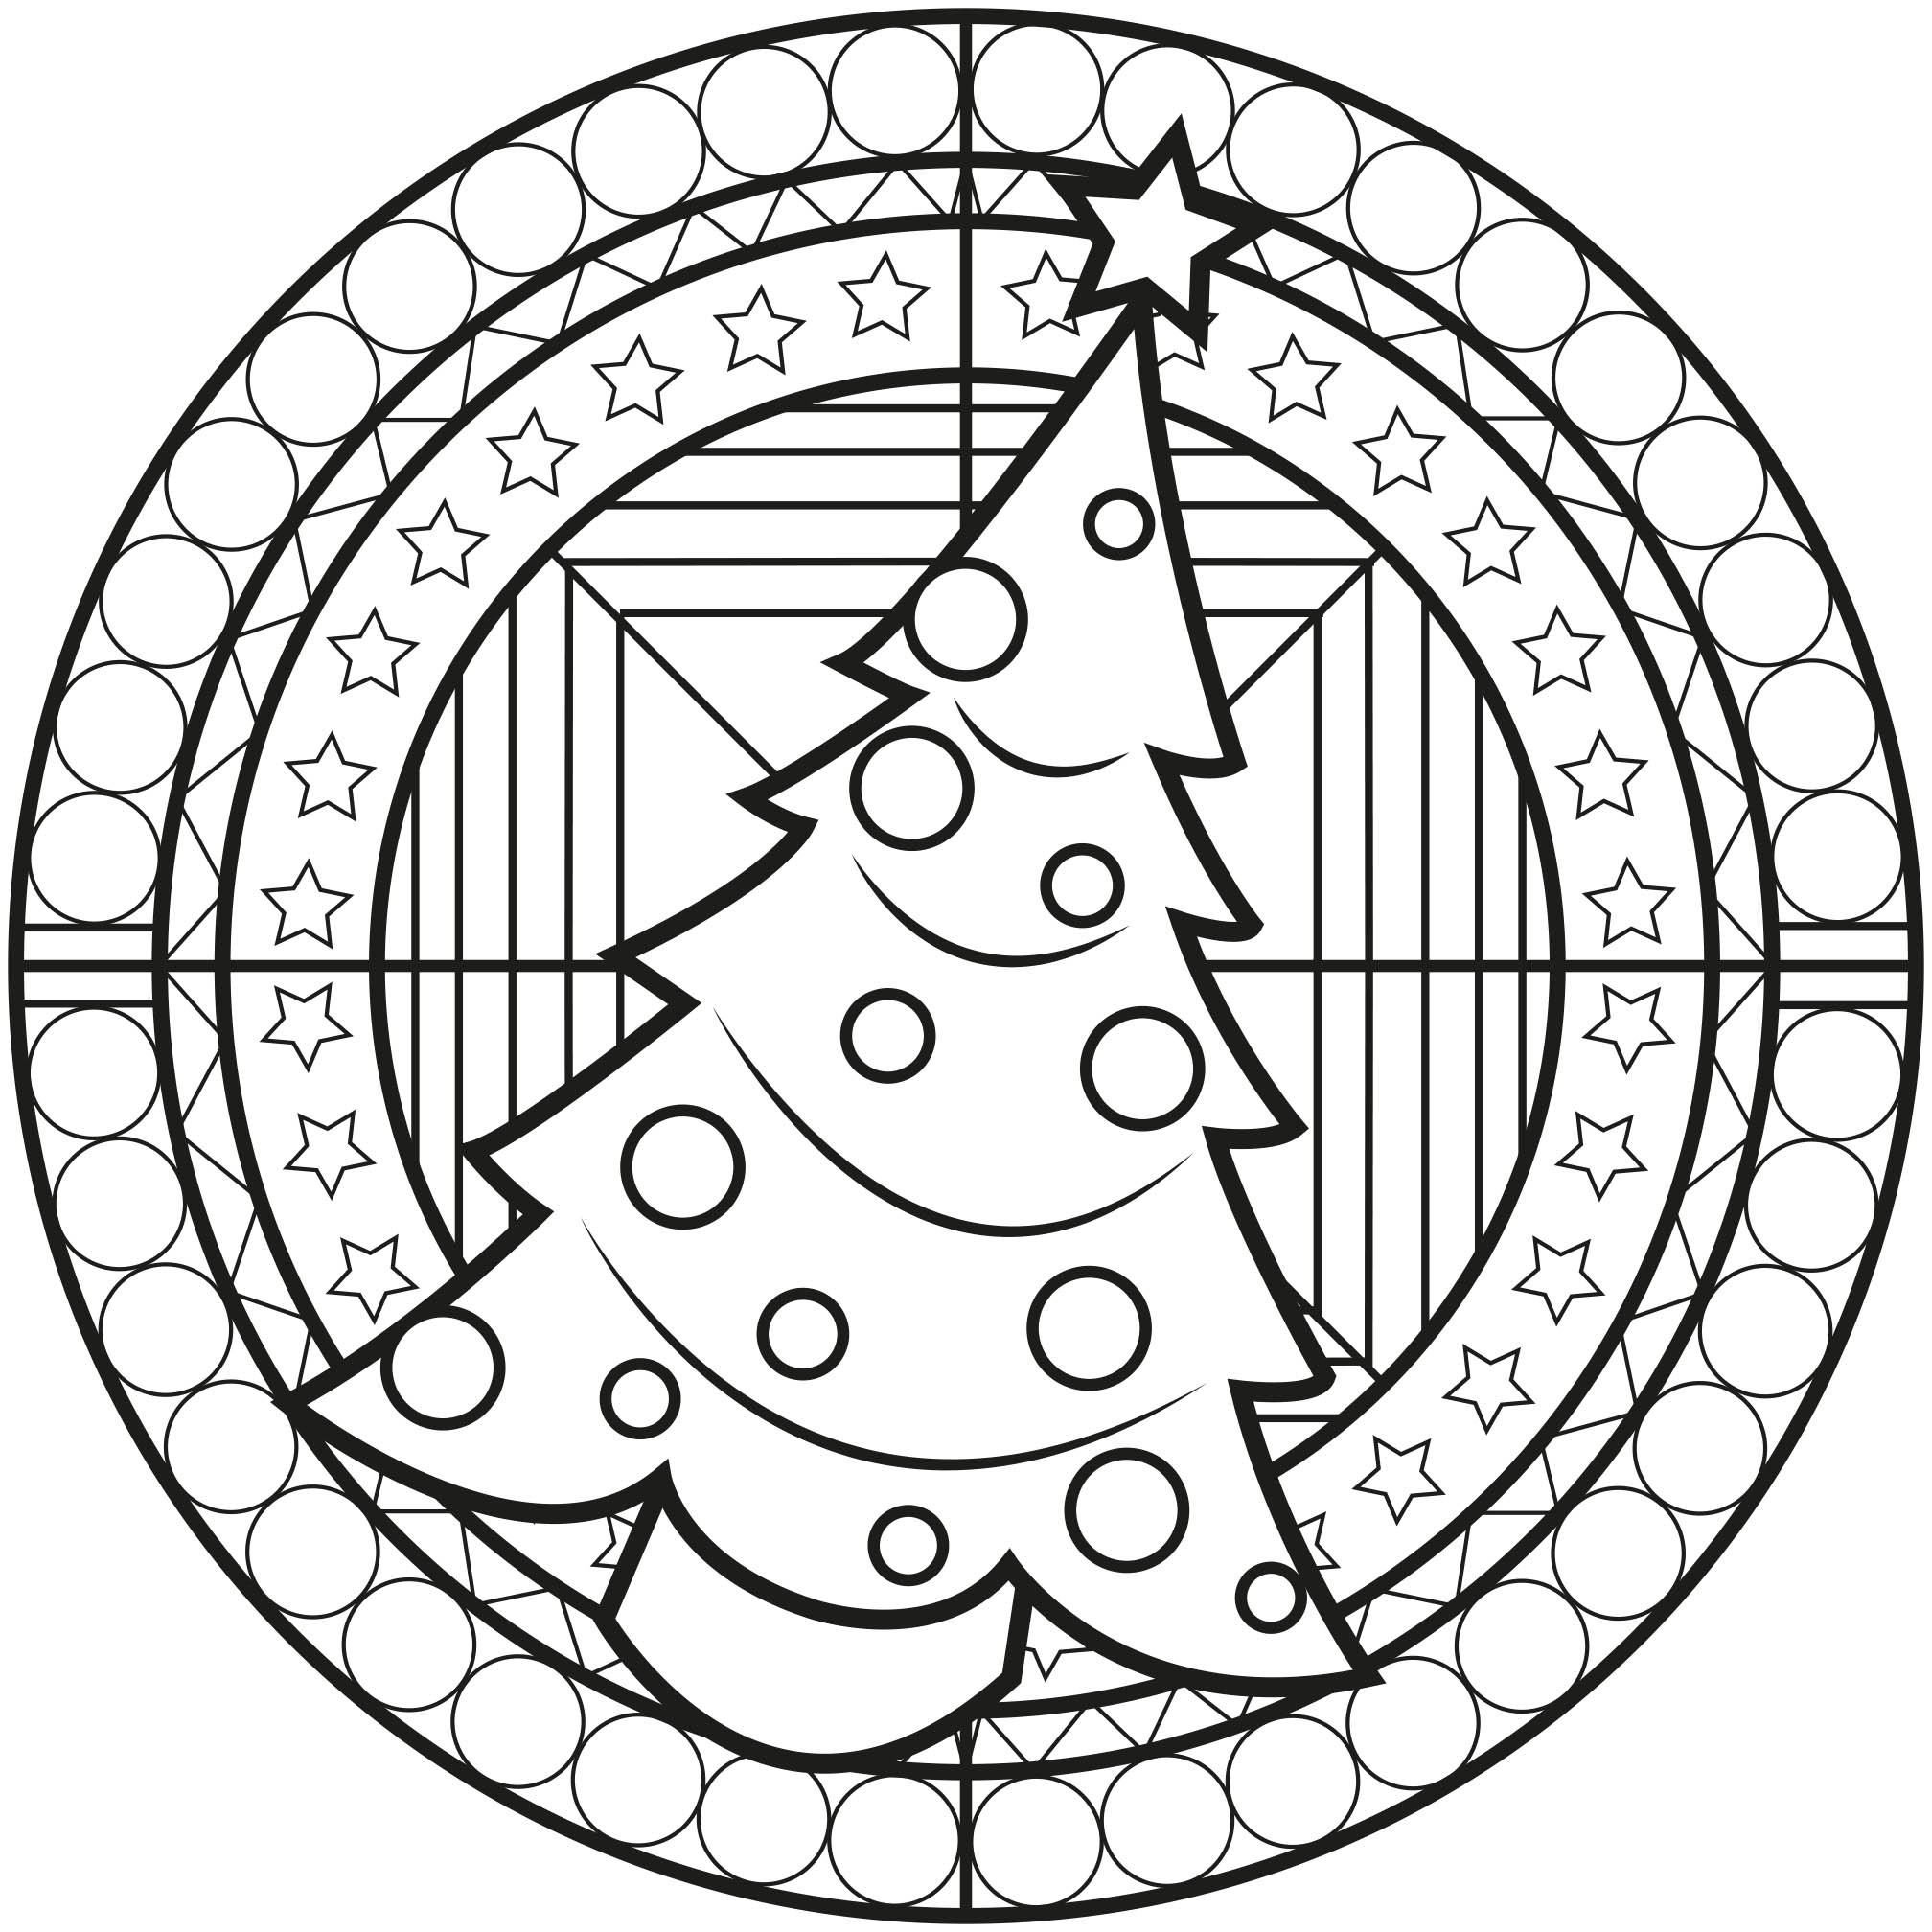 Weihnachten steht vor der Tür! Stimmen Sie sich mit diesem Weihnachtsmandala mit einem großen Weihnachtsbaum in der Mitte ein